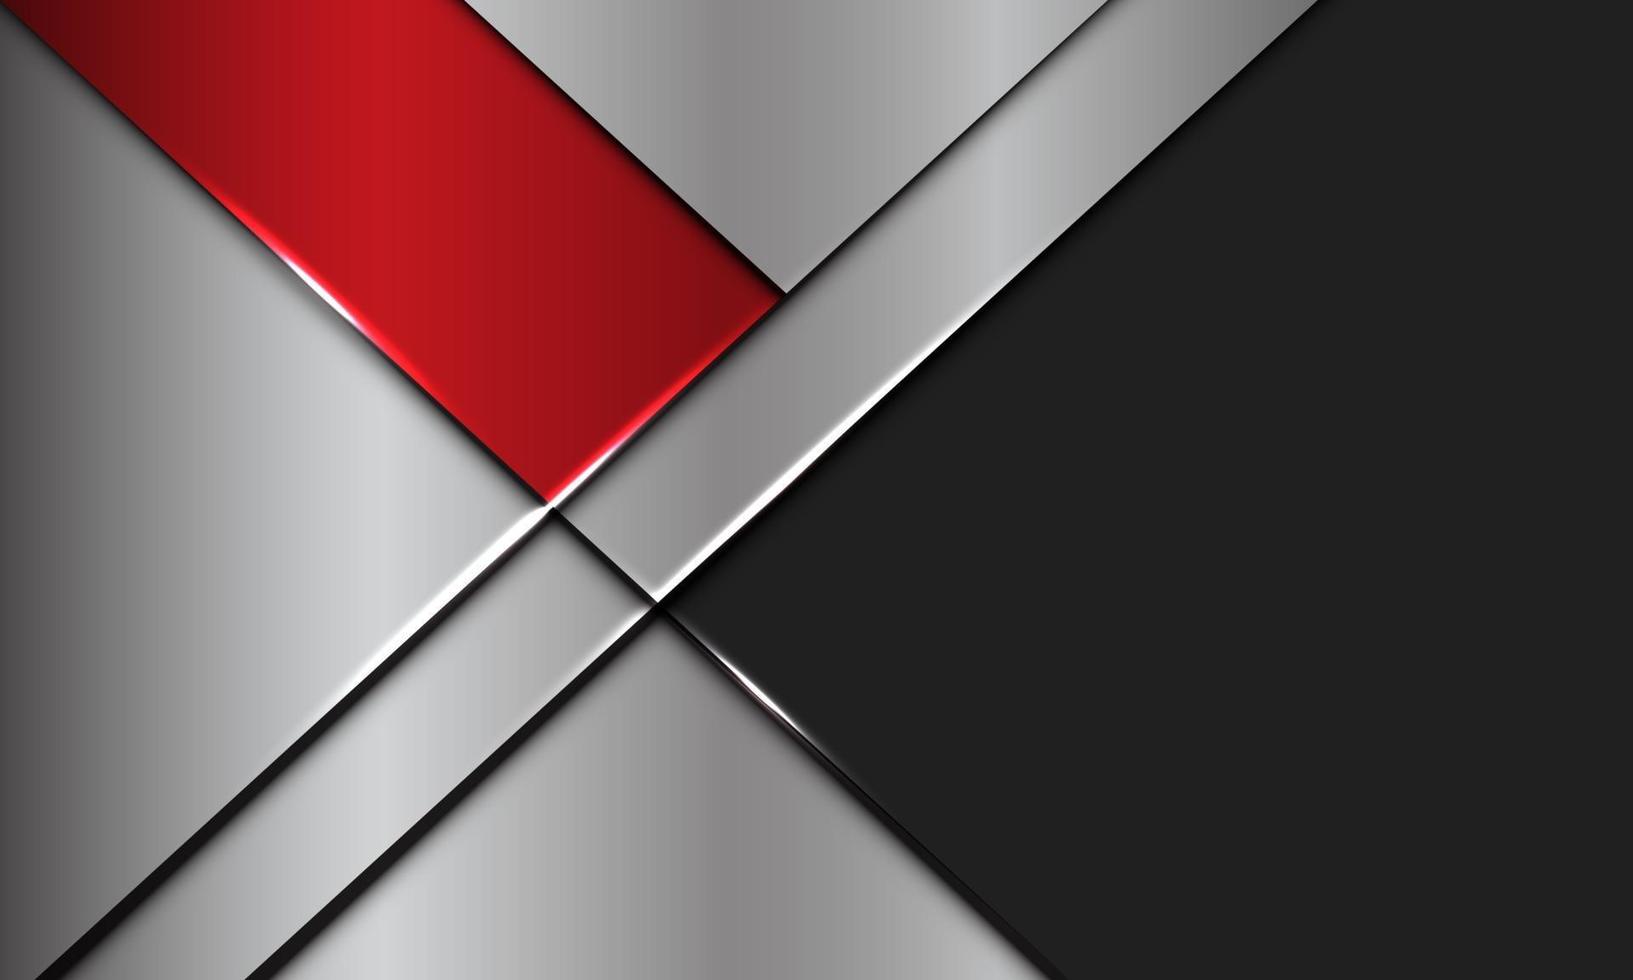 La plata metálica de la bandera roja abstracta se superpone con el ejemplo futurista moderno del vector del fondo del diseño del espacio en blanco gris oscuro.